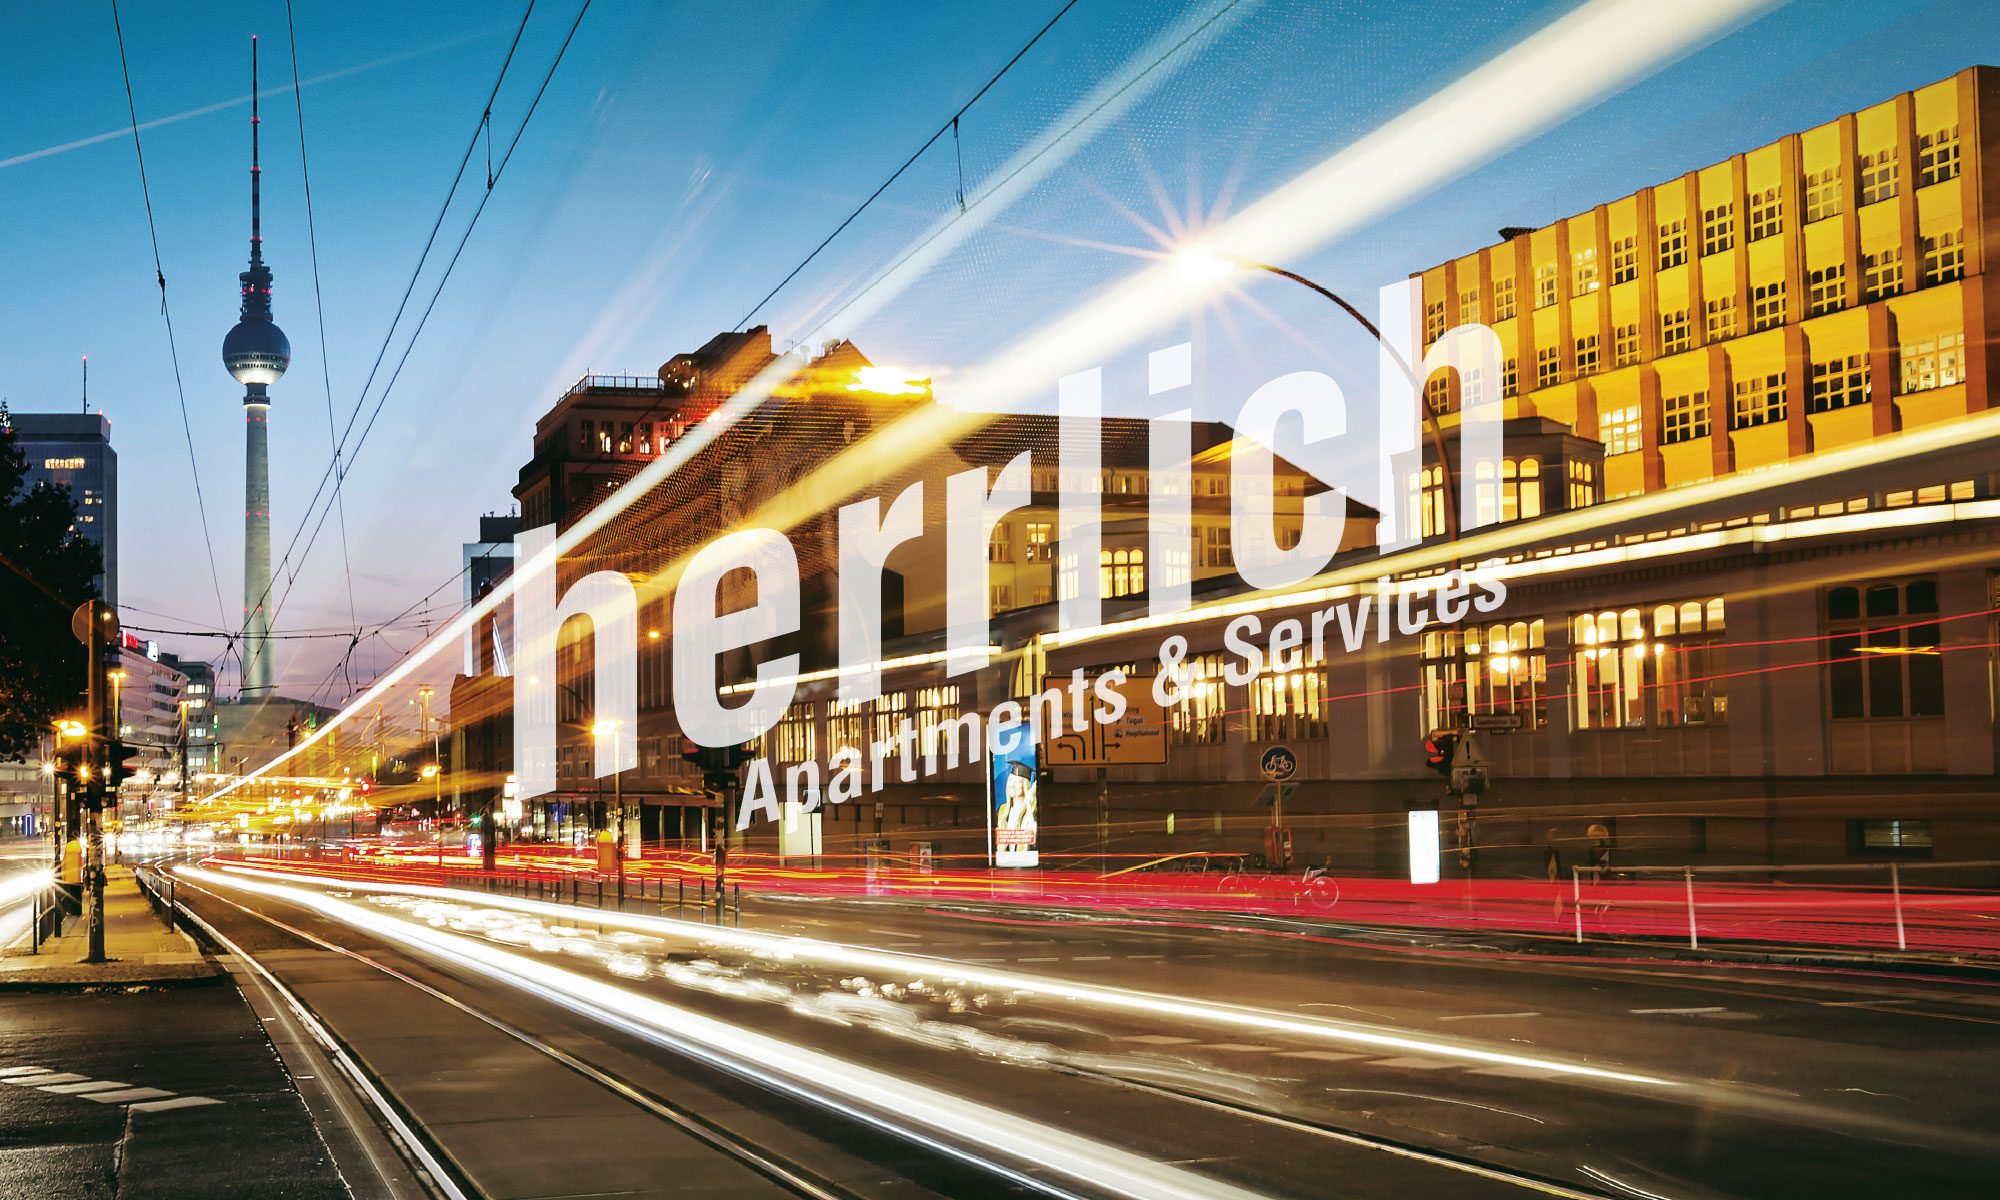 Herrlich Apartments & Services